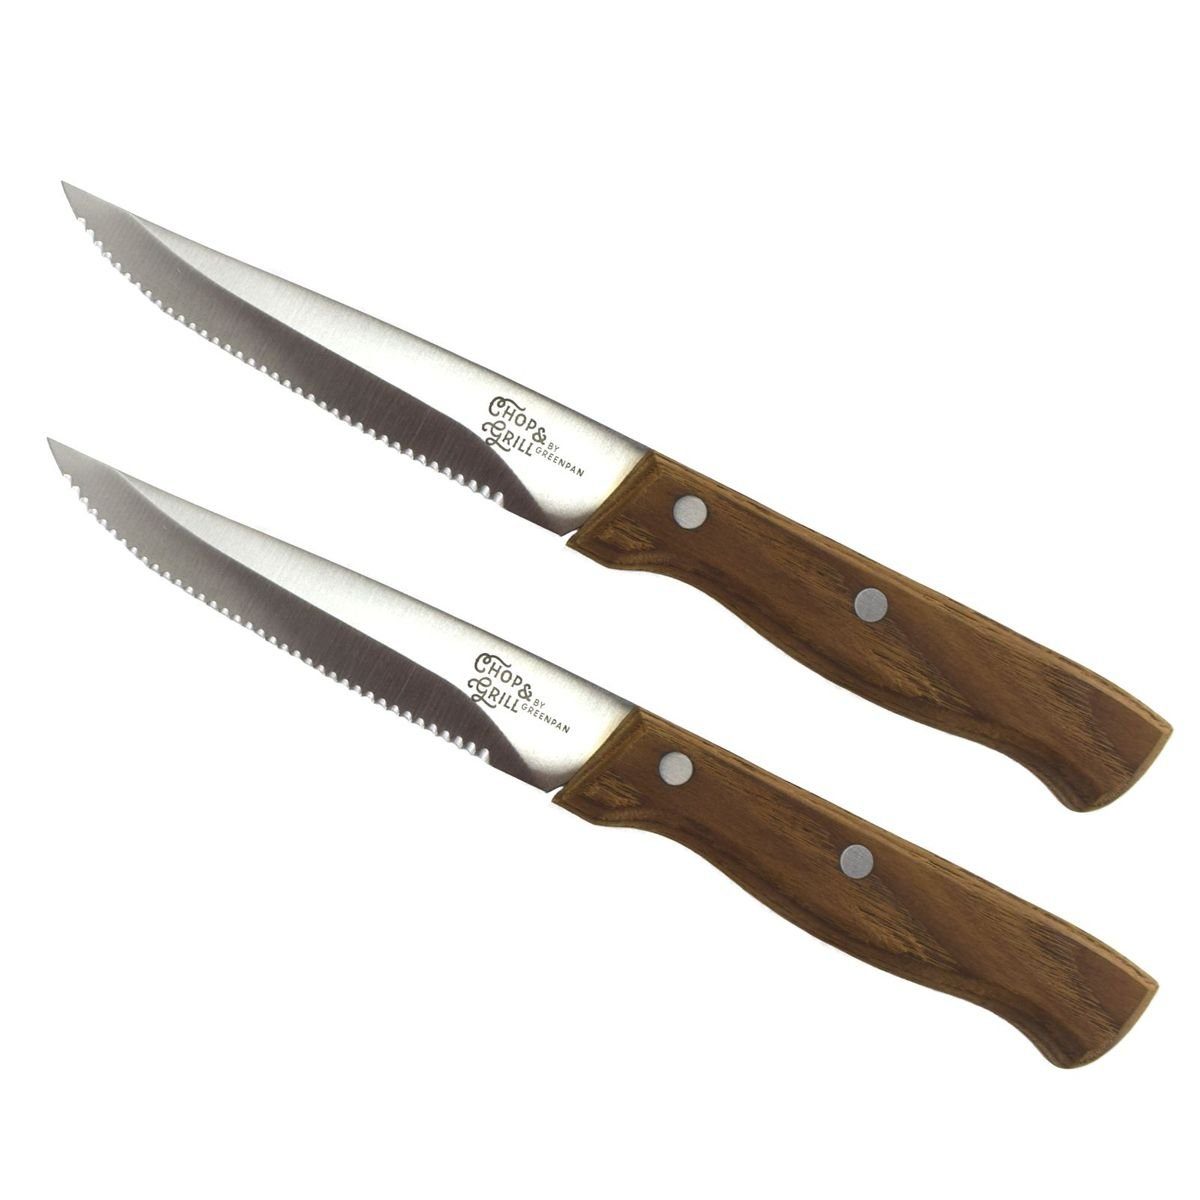 GREENPAN Universalküchenmesser Steakmesser aus Edelstahl mit Holzgriff ca. 22 cm Messer-Set 2-tlg., scharf durch Wellenschliff (gezahnt)